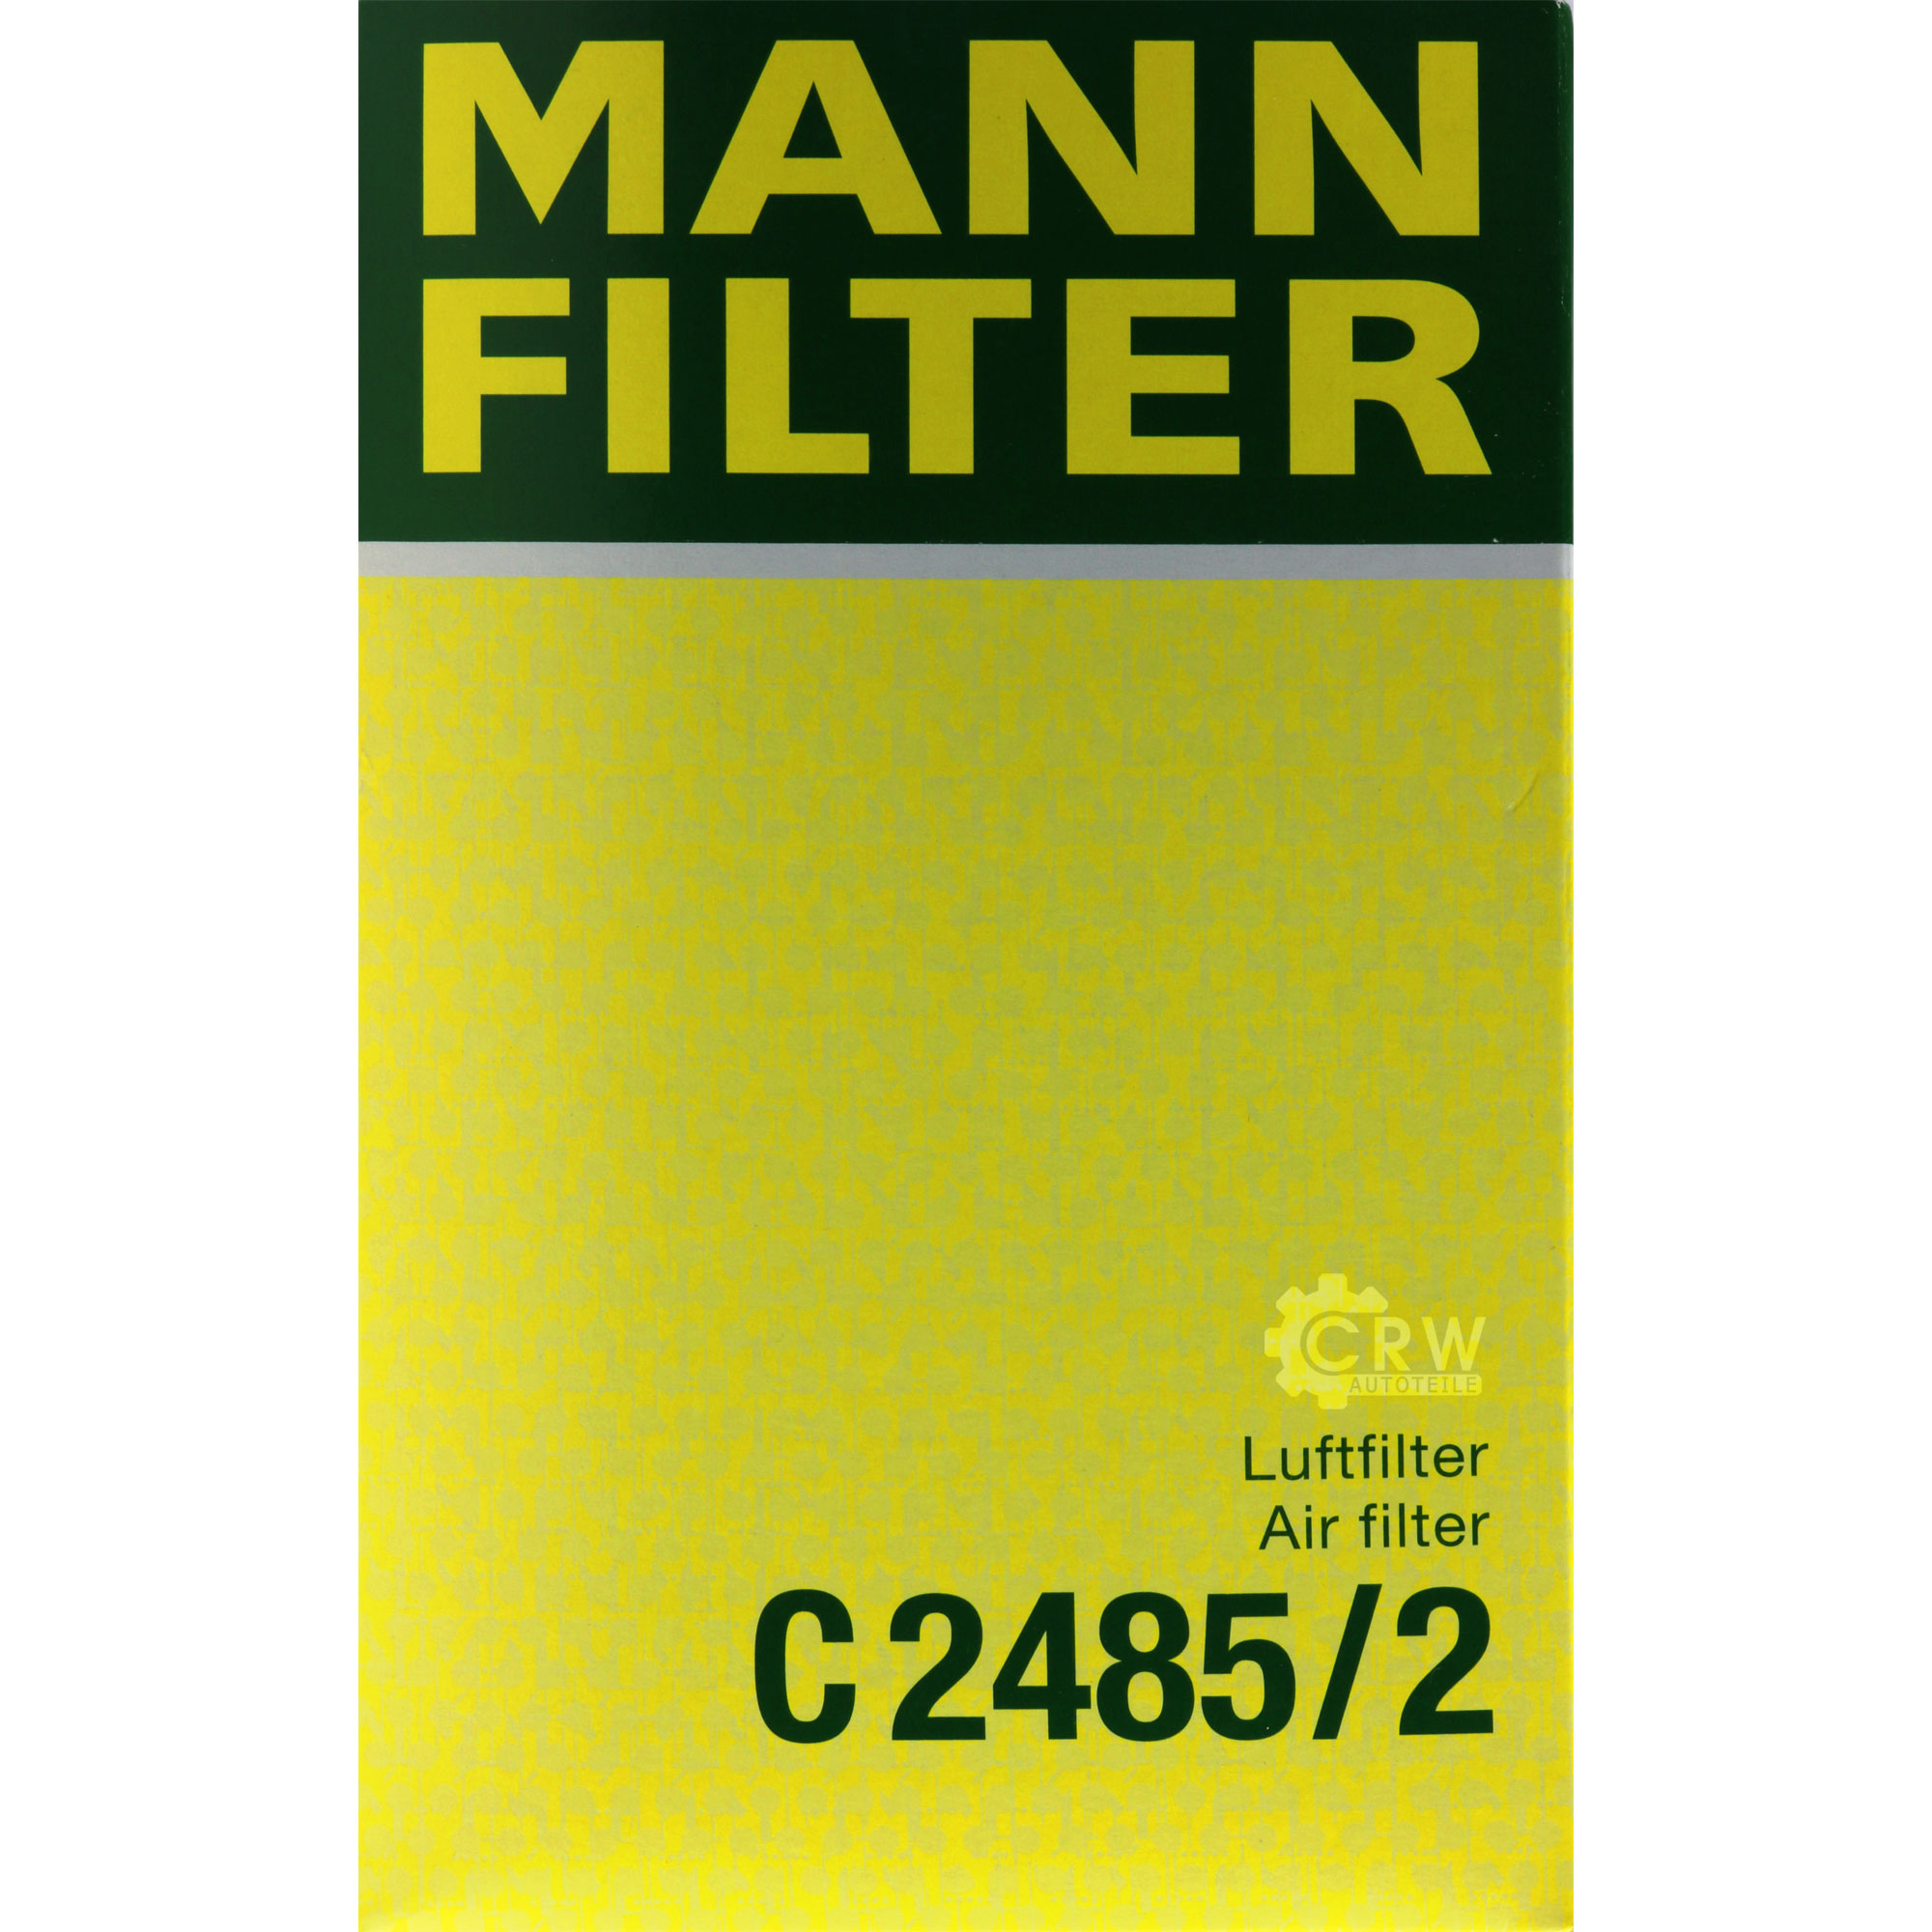 MANN-FILTER Luftfilter für Renault Clio III BR0/1 CR0/1 1.2 16V 1.6 KR0/1_ 1.4